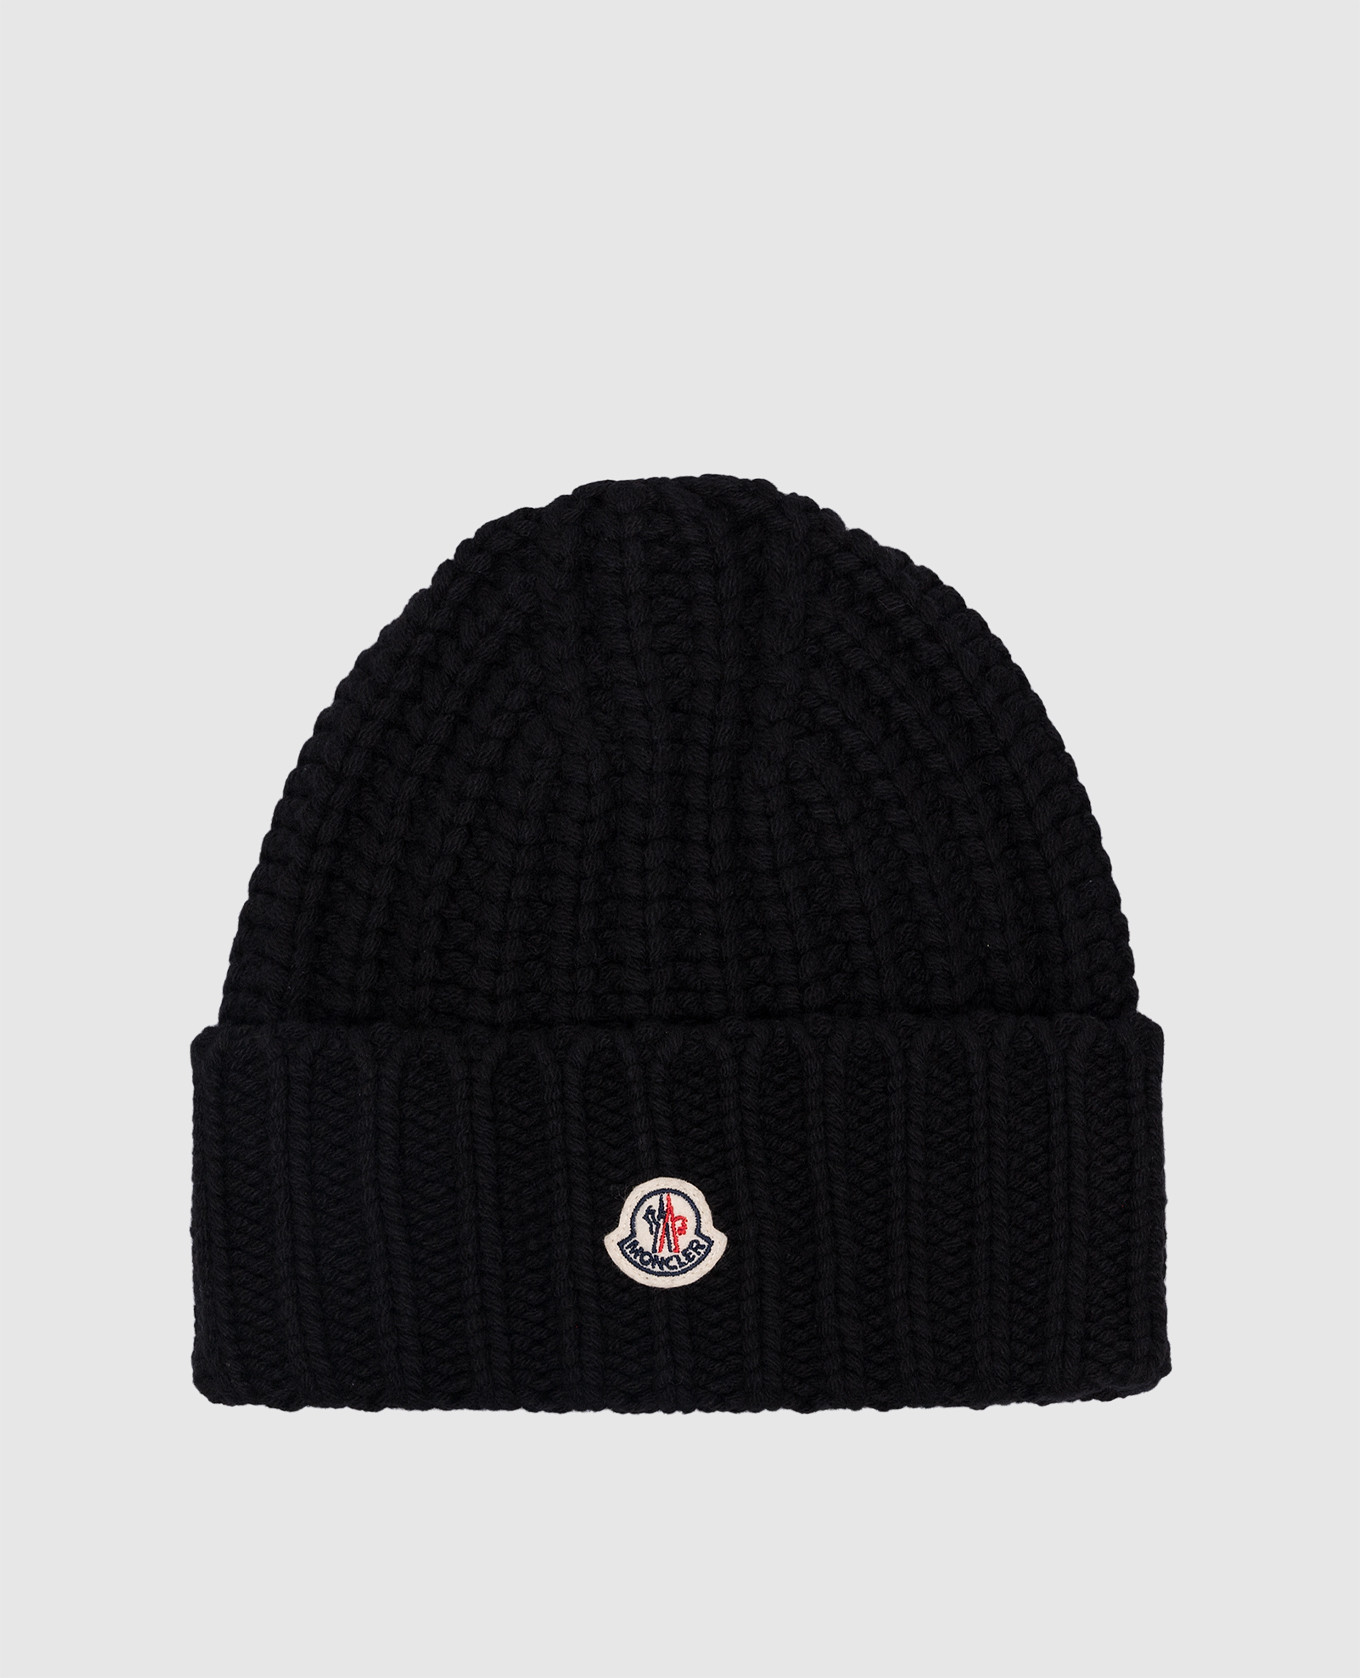 Черная шапка из кашемира и шерсти с логотипом.